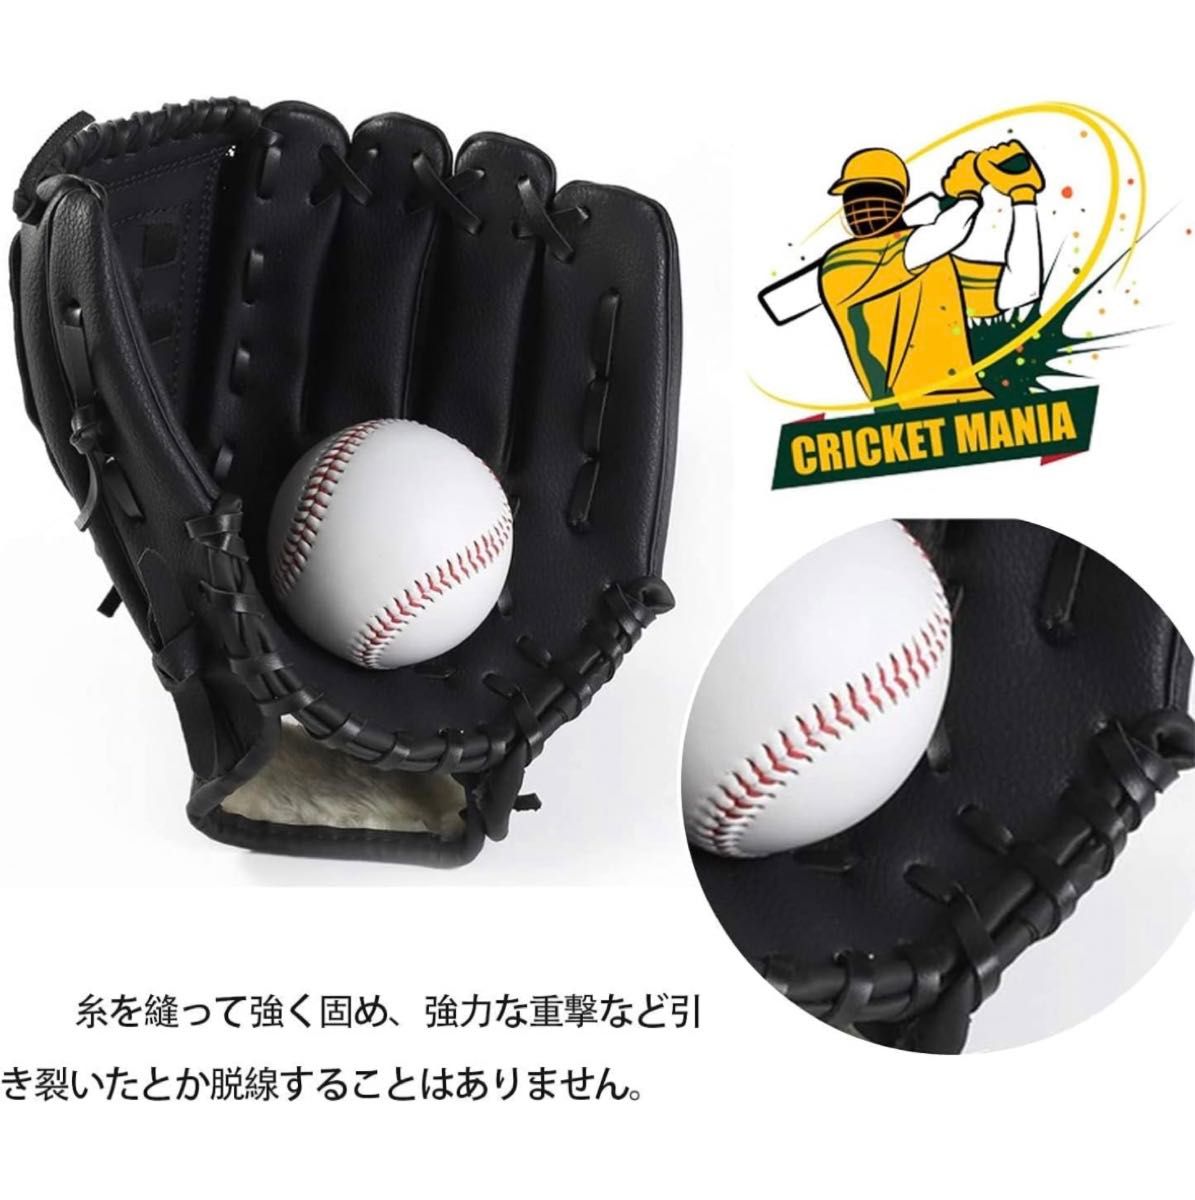 【新品未開封】Takerei 野球 グローブ 大人12.5インチ